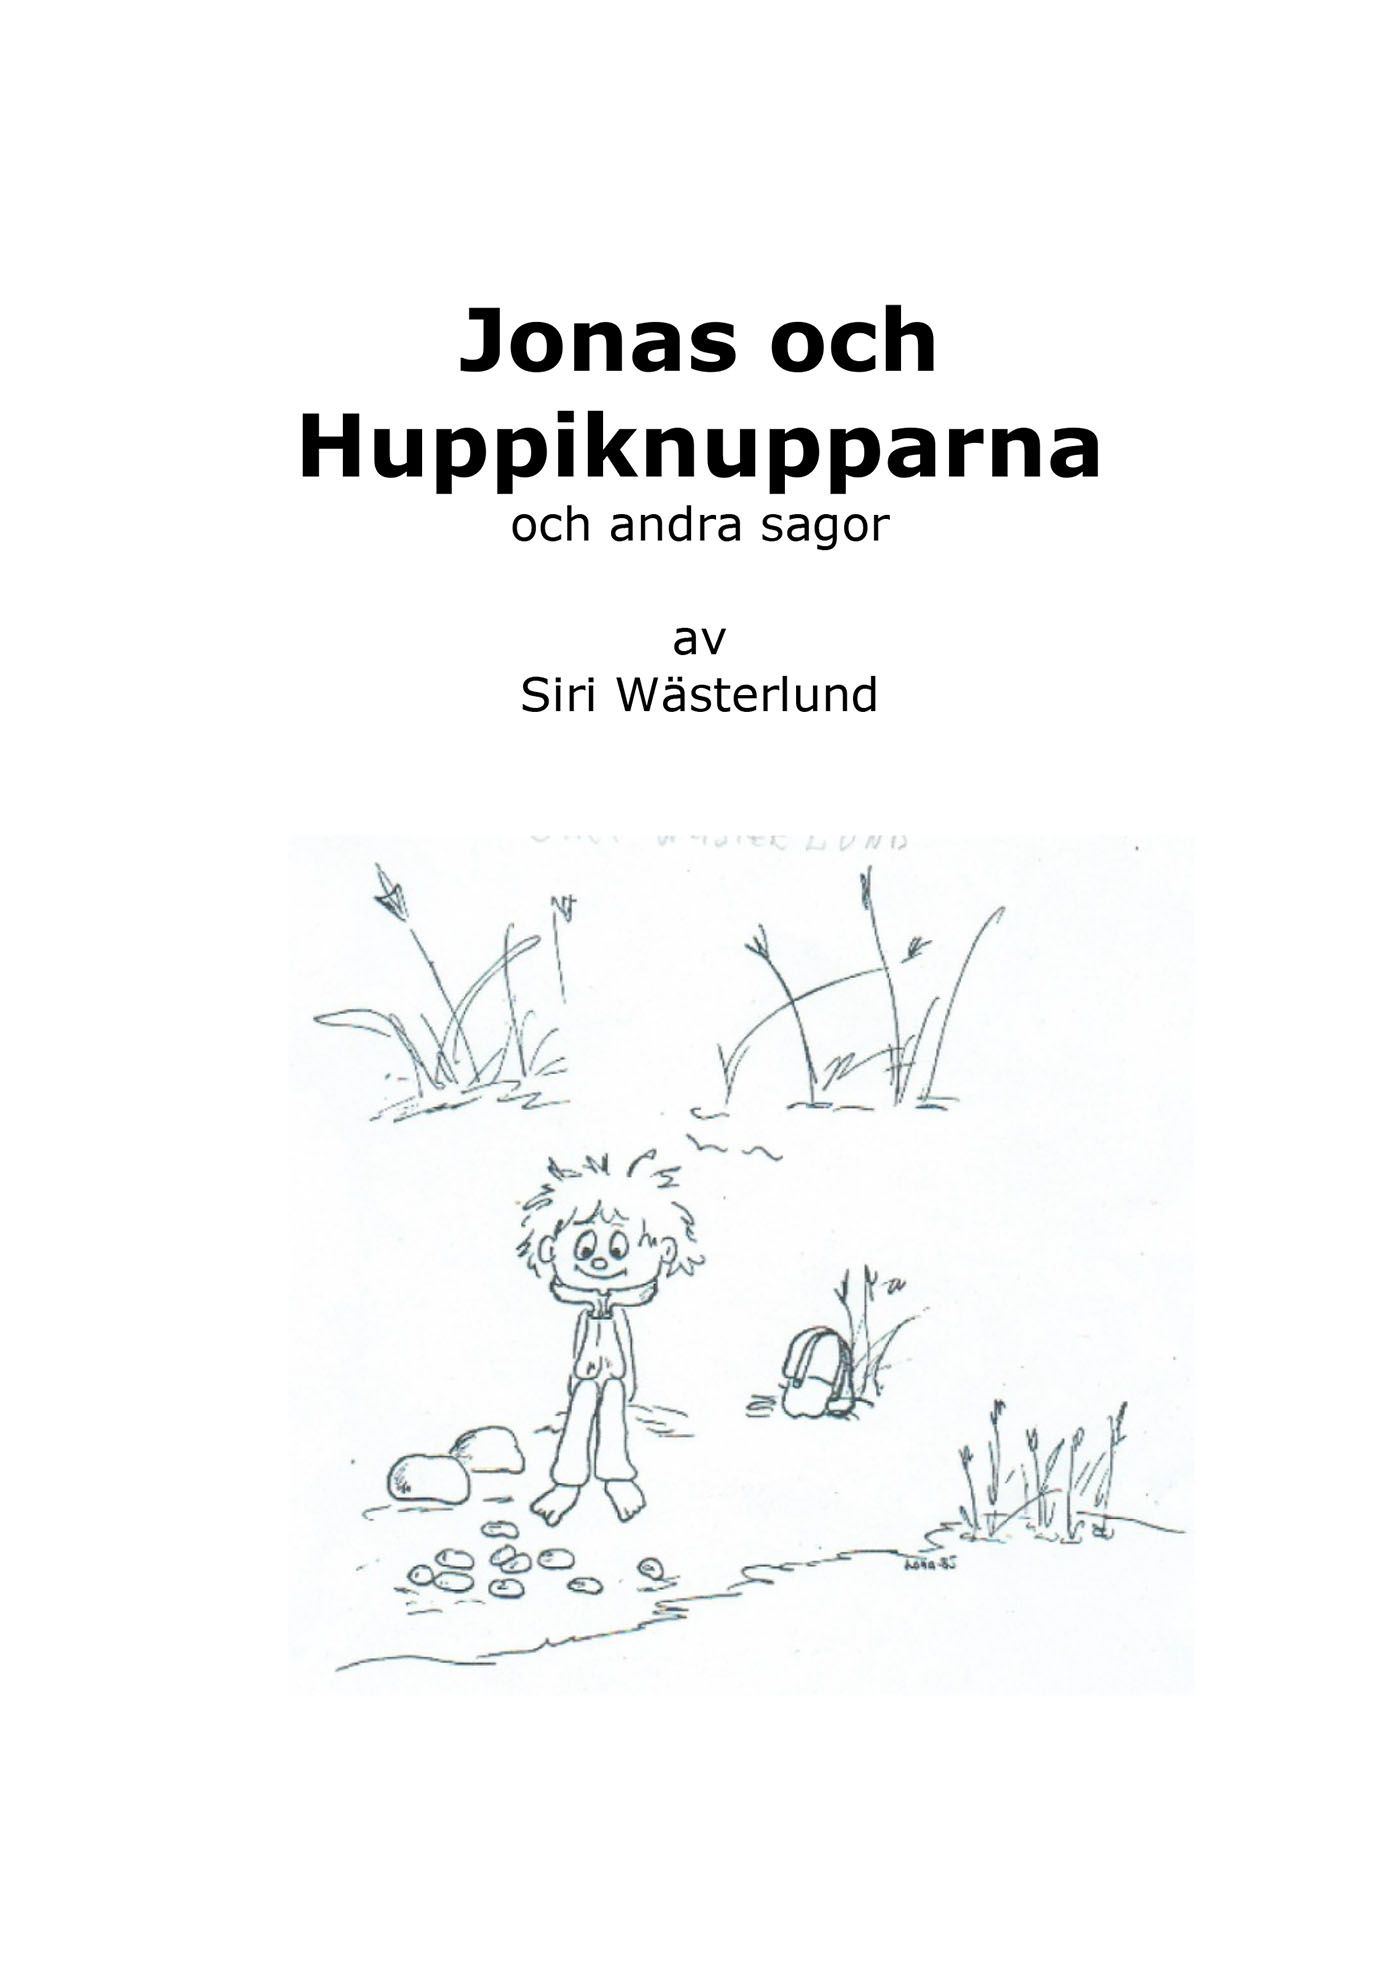 Jonas och Huppiknupparna och andra sagor, eBook by Siri Wästerlund